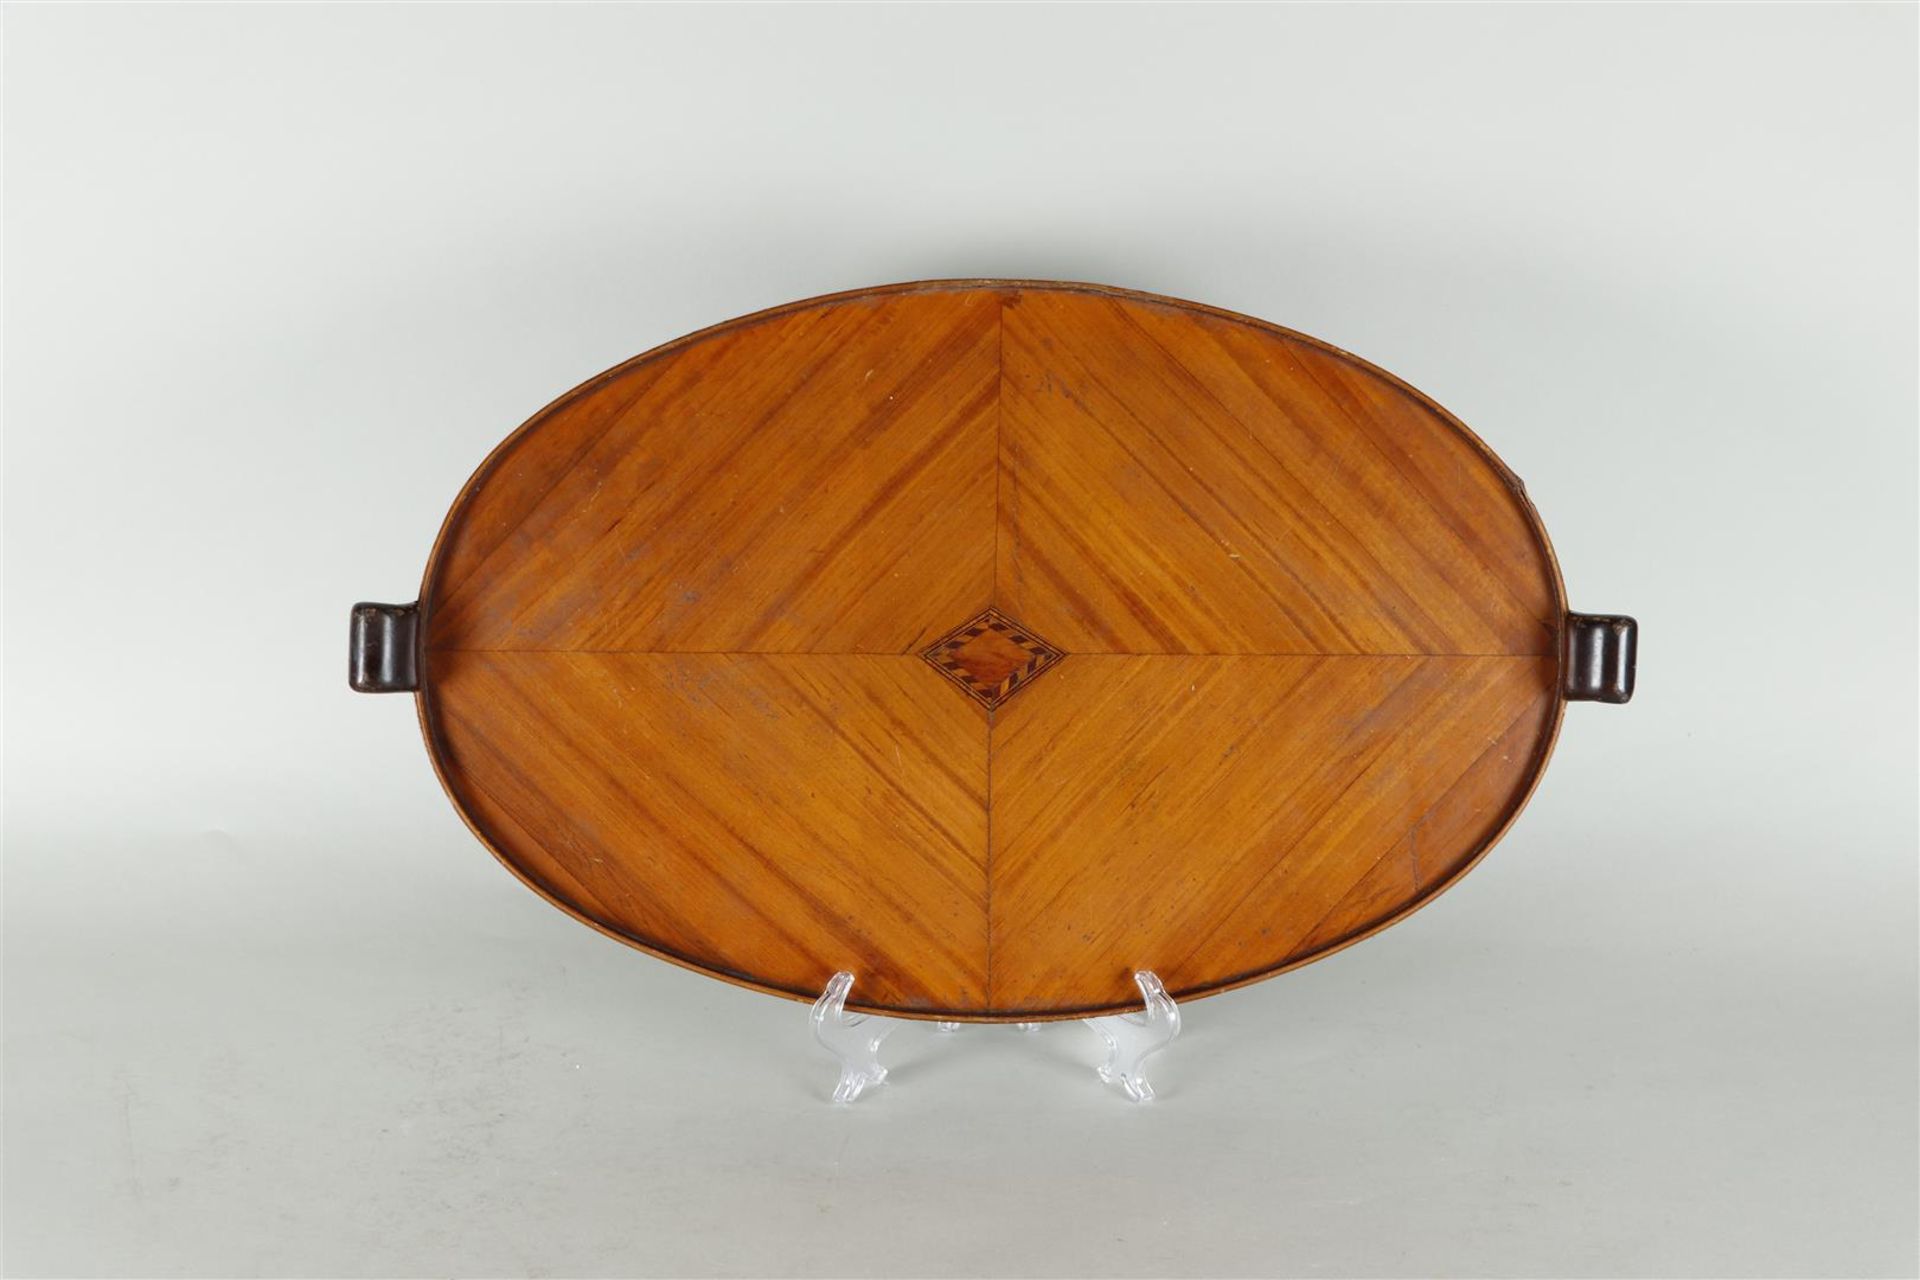 An English mahogany glued tray with intarsia,